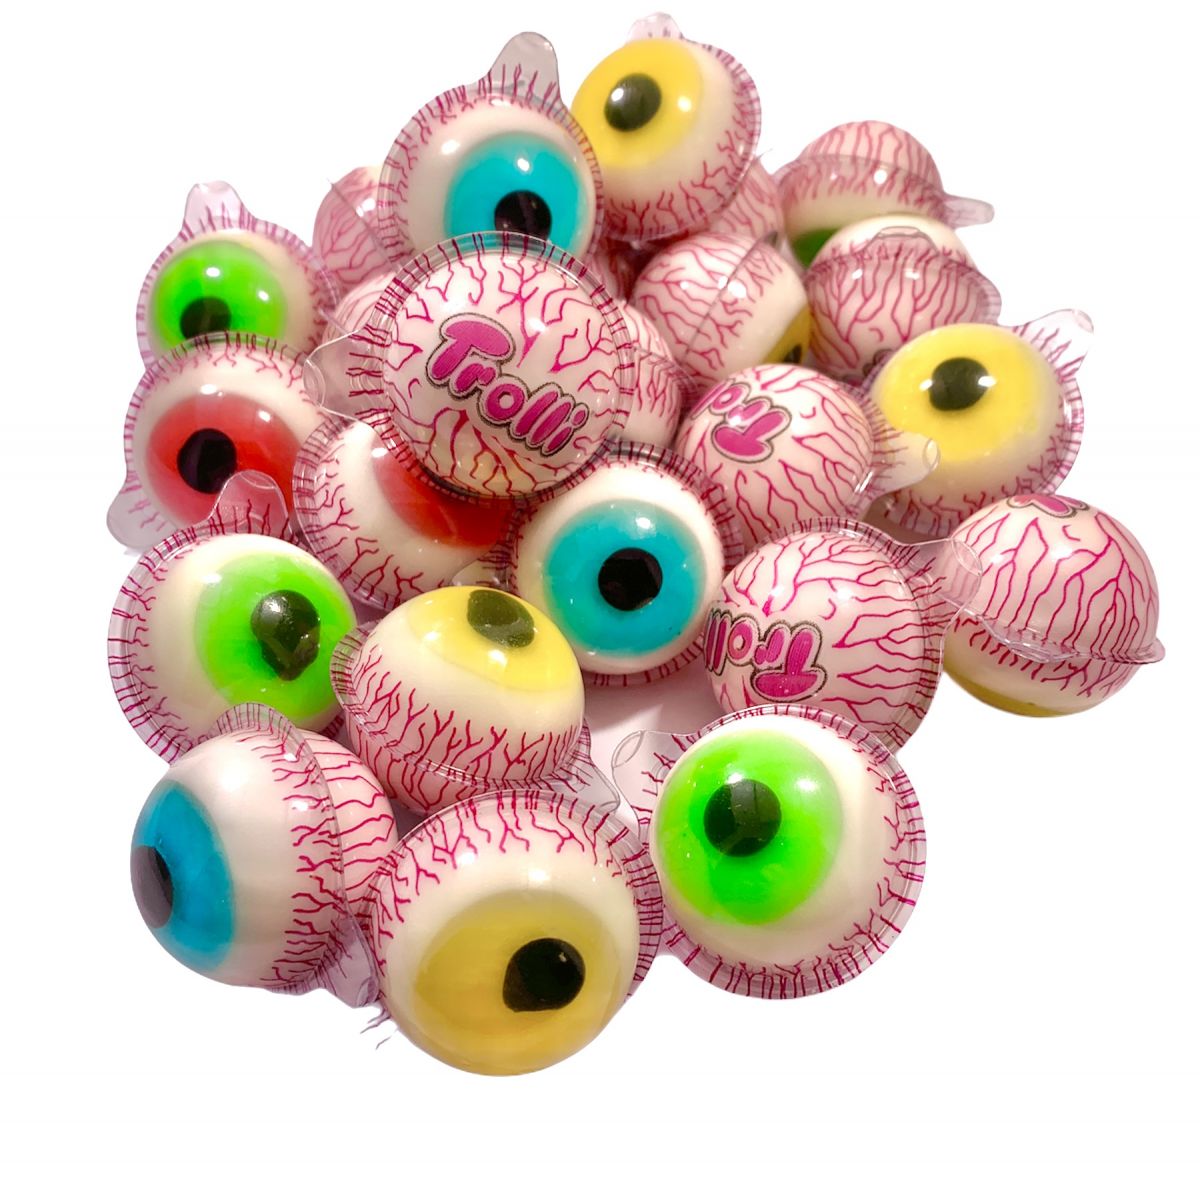 Les Bonbons de Mandy - Bonbons Gélifiés - Trolli Glotzer Oeil